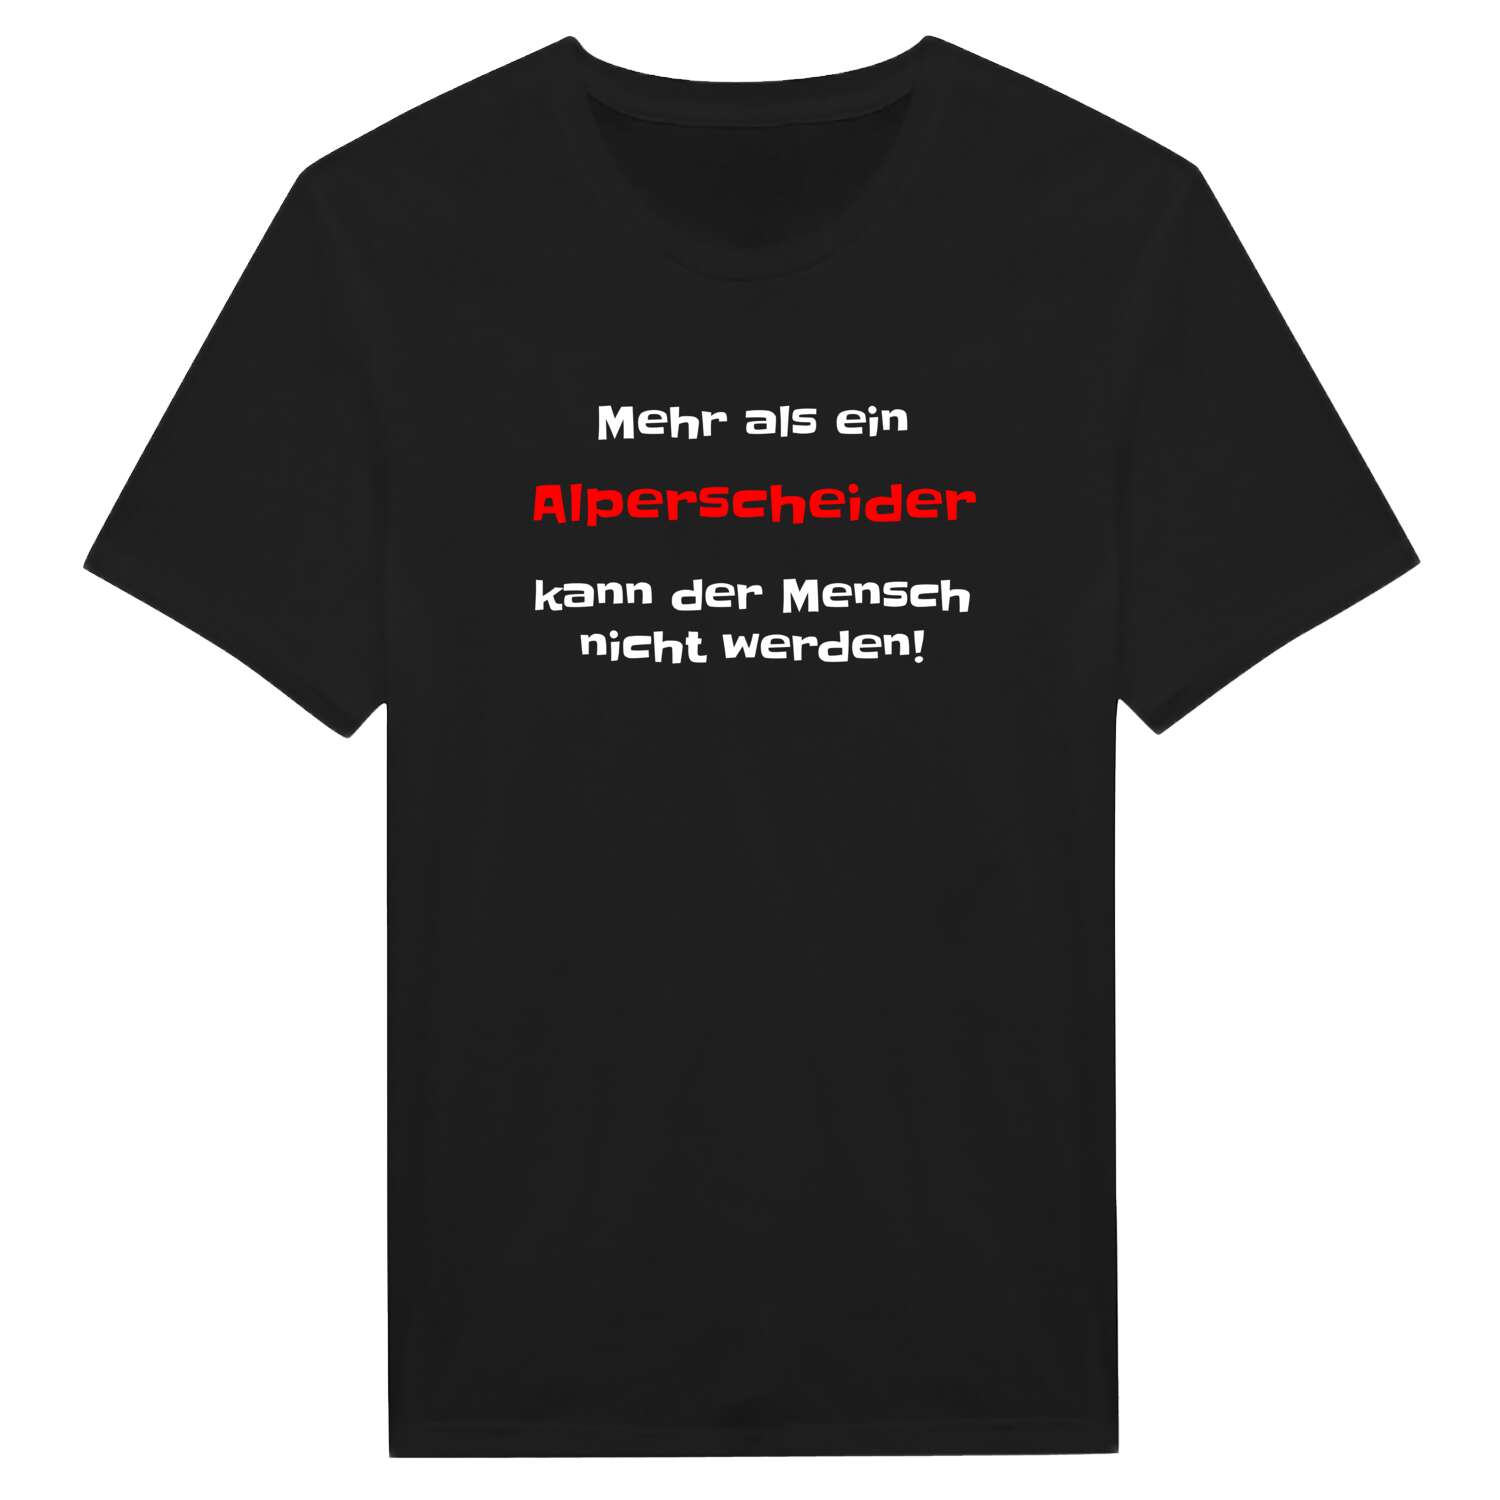 Alperscheid T-Shirt »Mehr als ein«